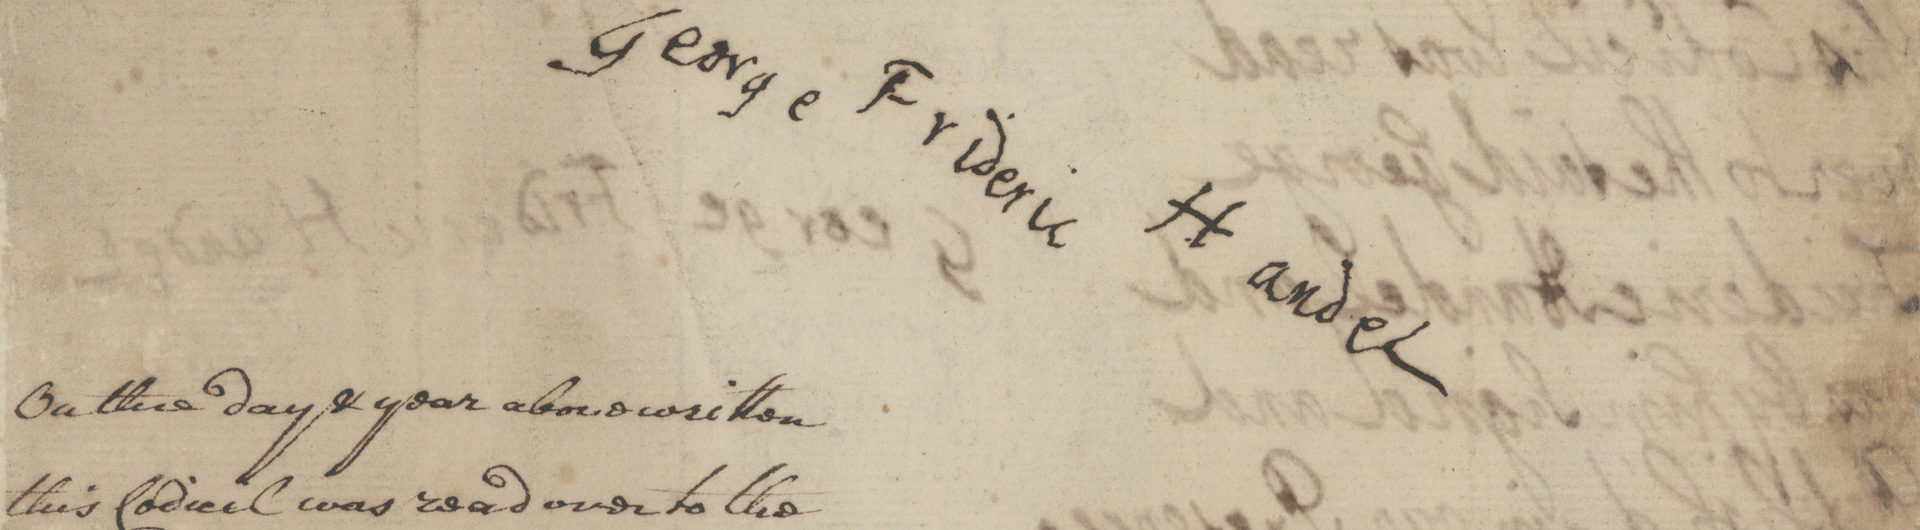 Signature to codicil added to Handel’s will © Gerald Coke Handel Foundation